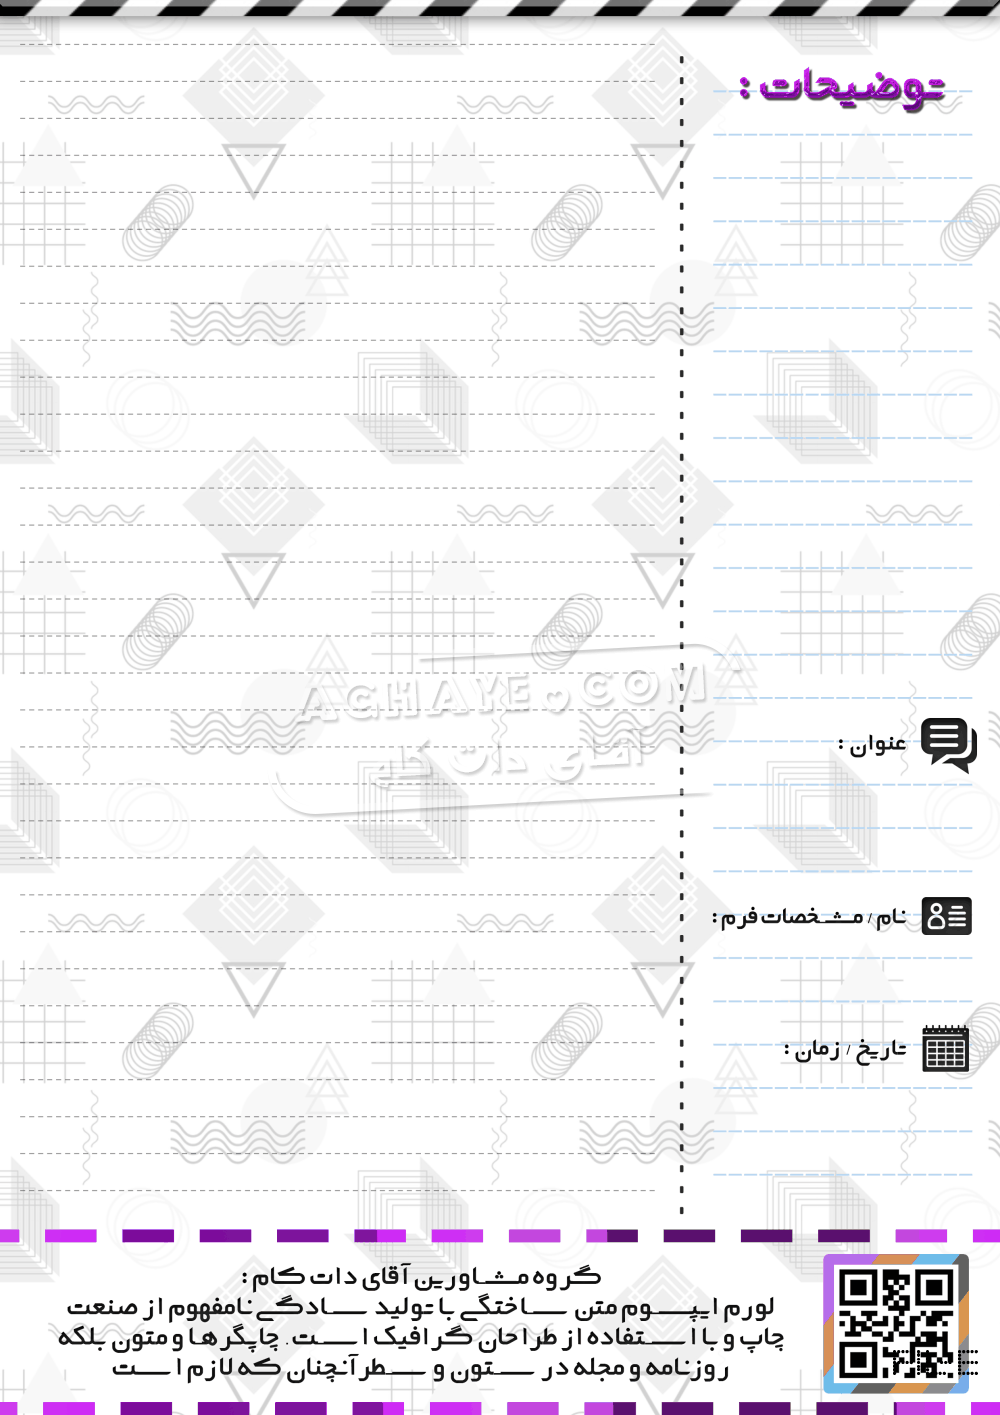 طرح یادداشت A4 ، طراحی جهت پرینت و چاپ به صورت لایه باز